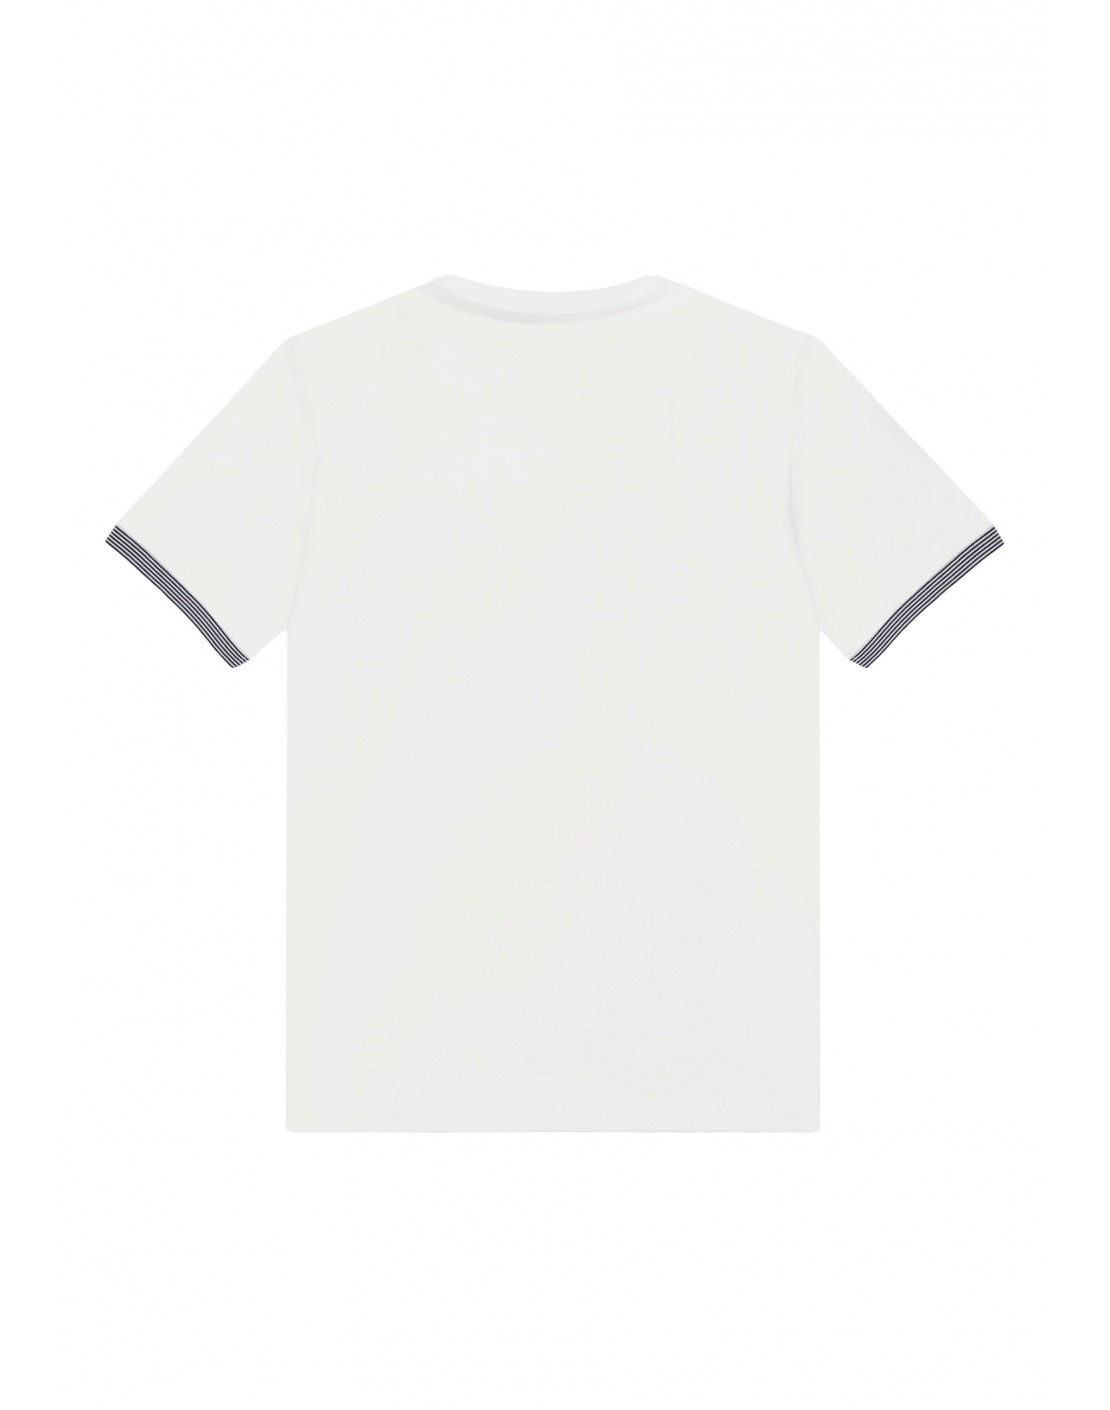 Antony Morato Camiseta Regular Fit en algodón con logo engomado